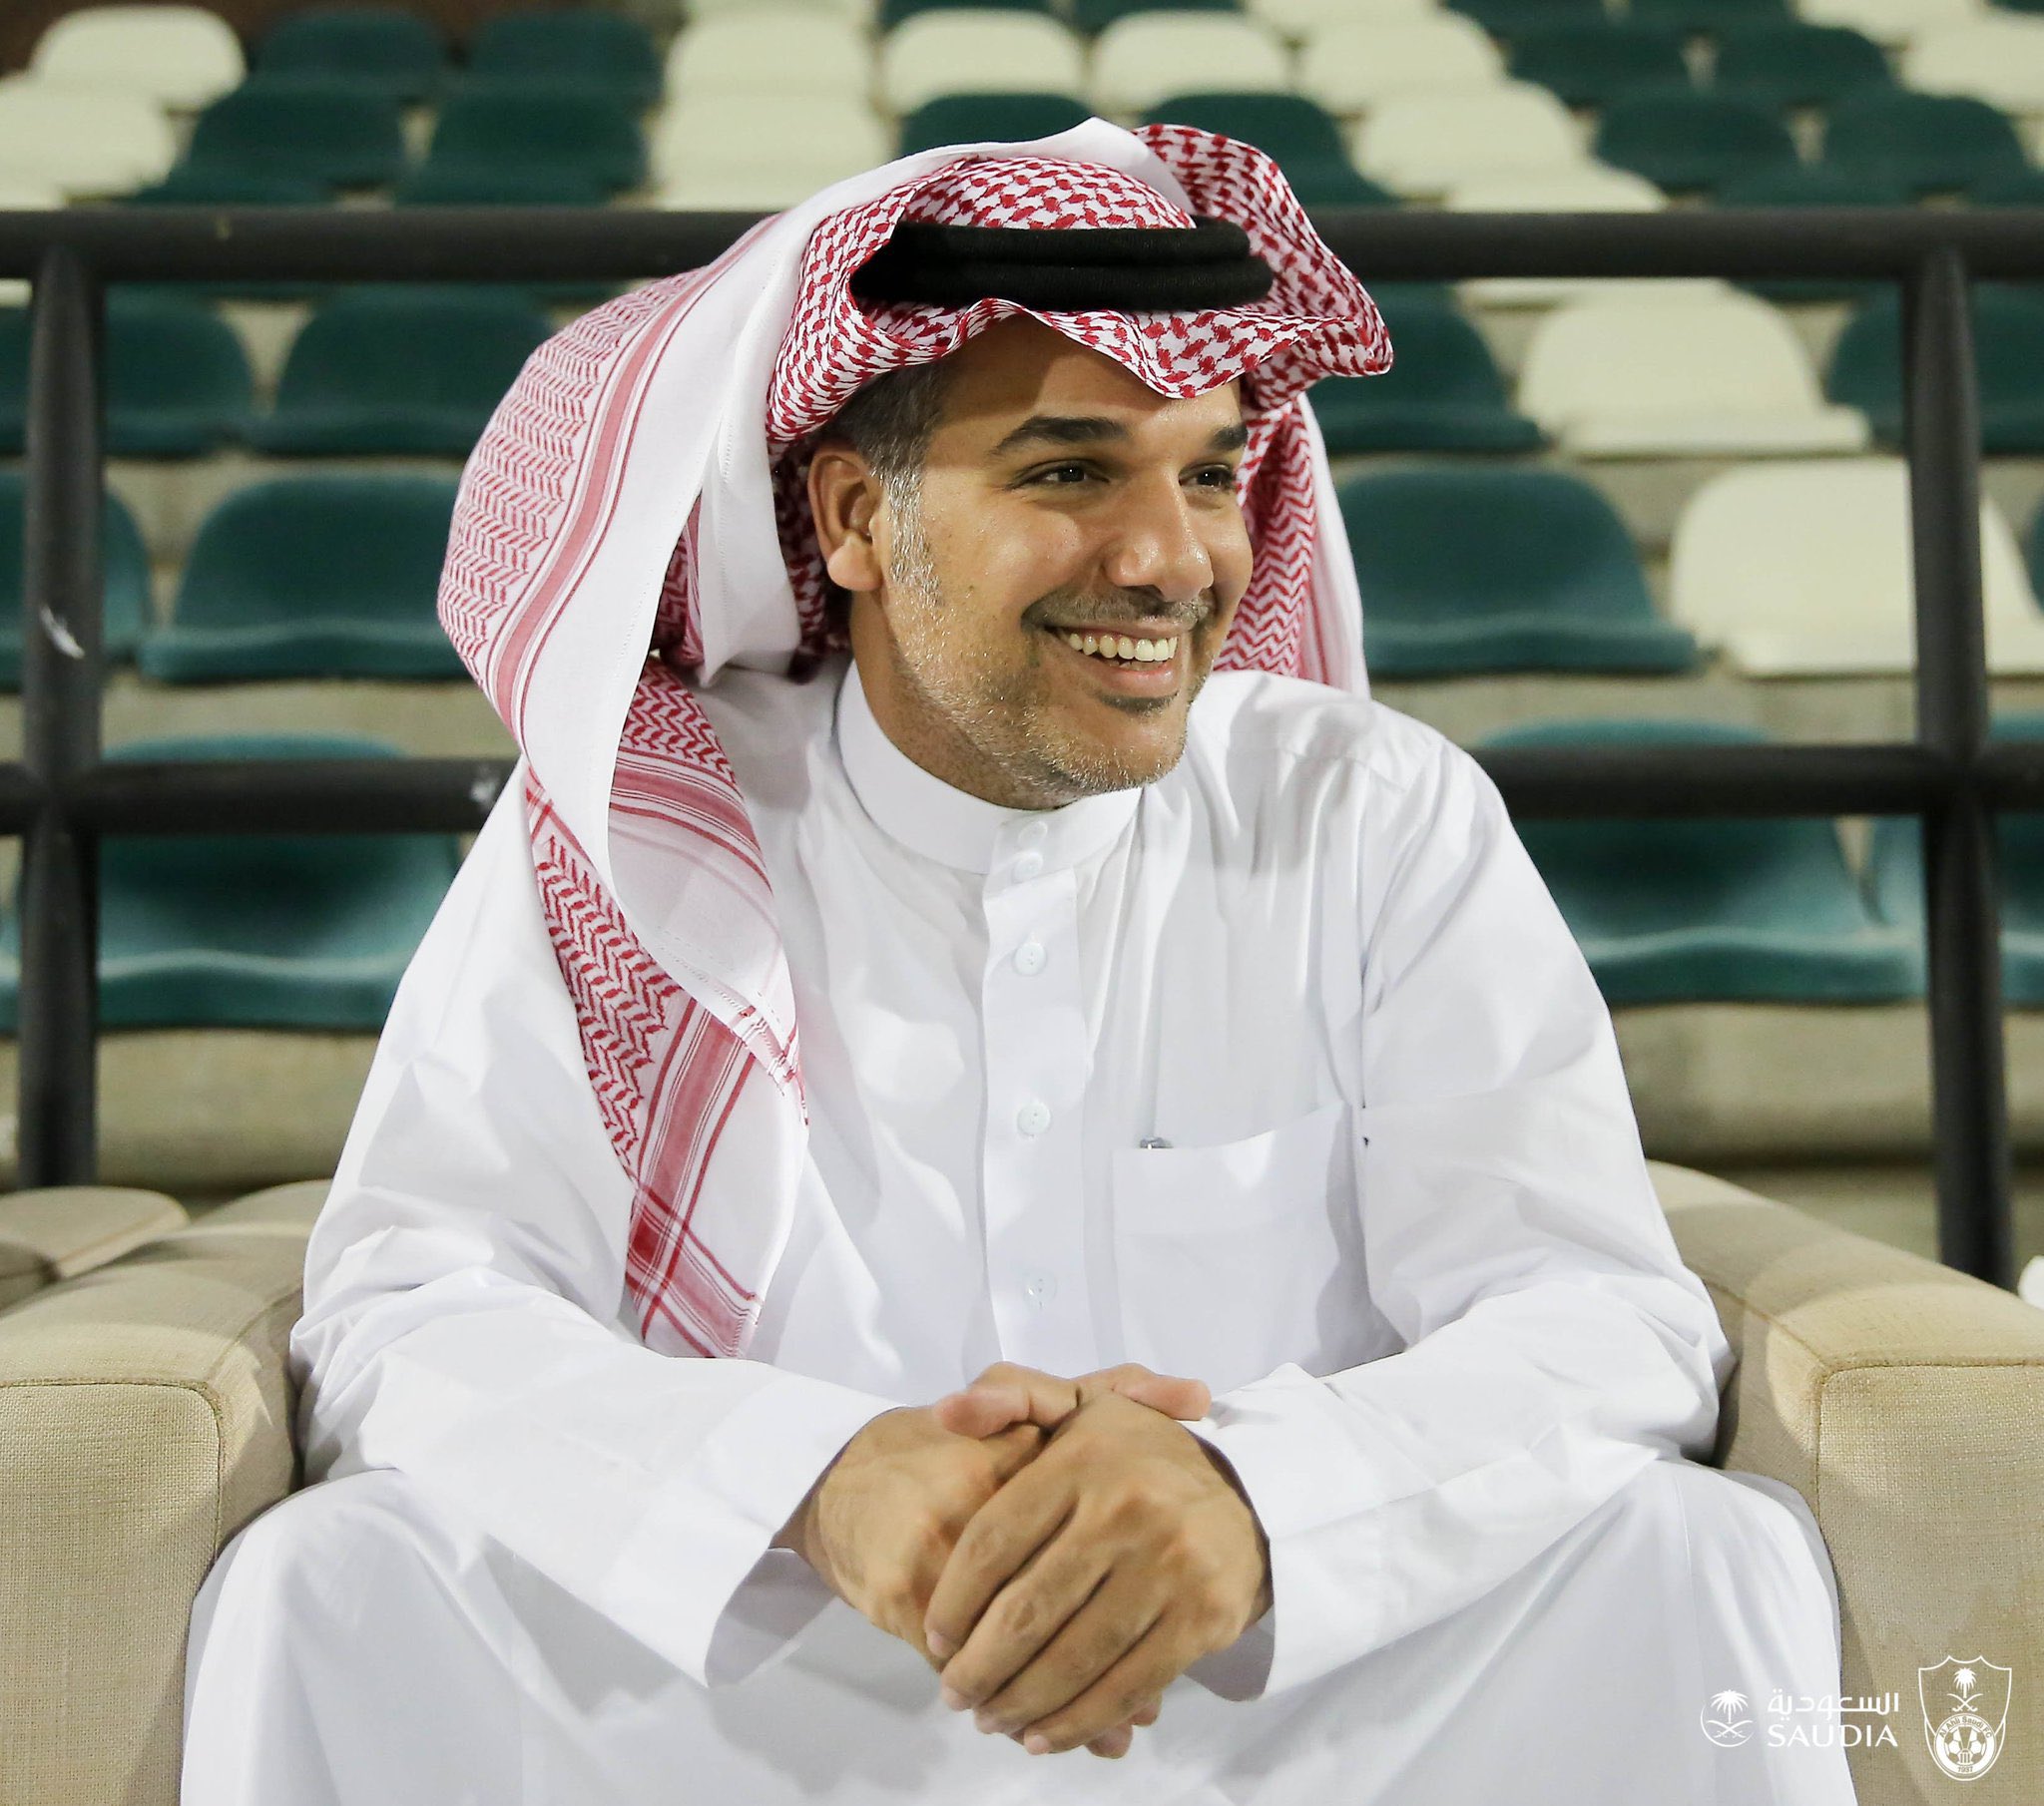 جماهير الأهلي تطالب الإدارة بضم لاعب الرائد "سلطان فرحان"